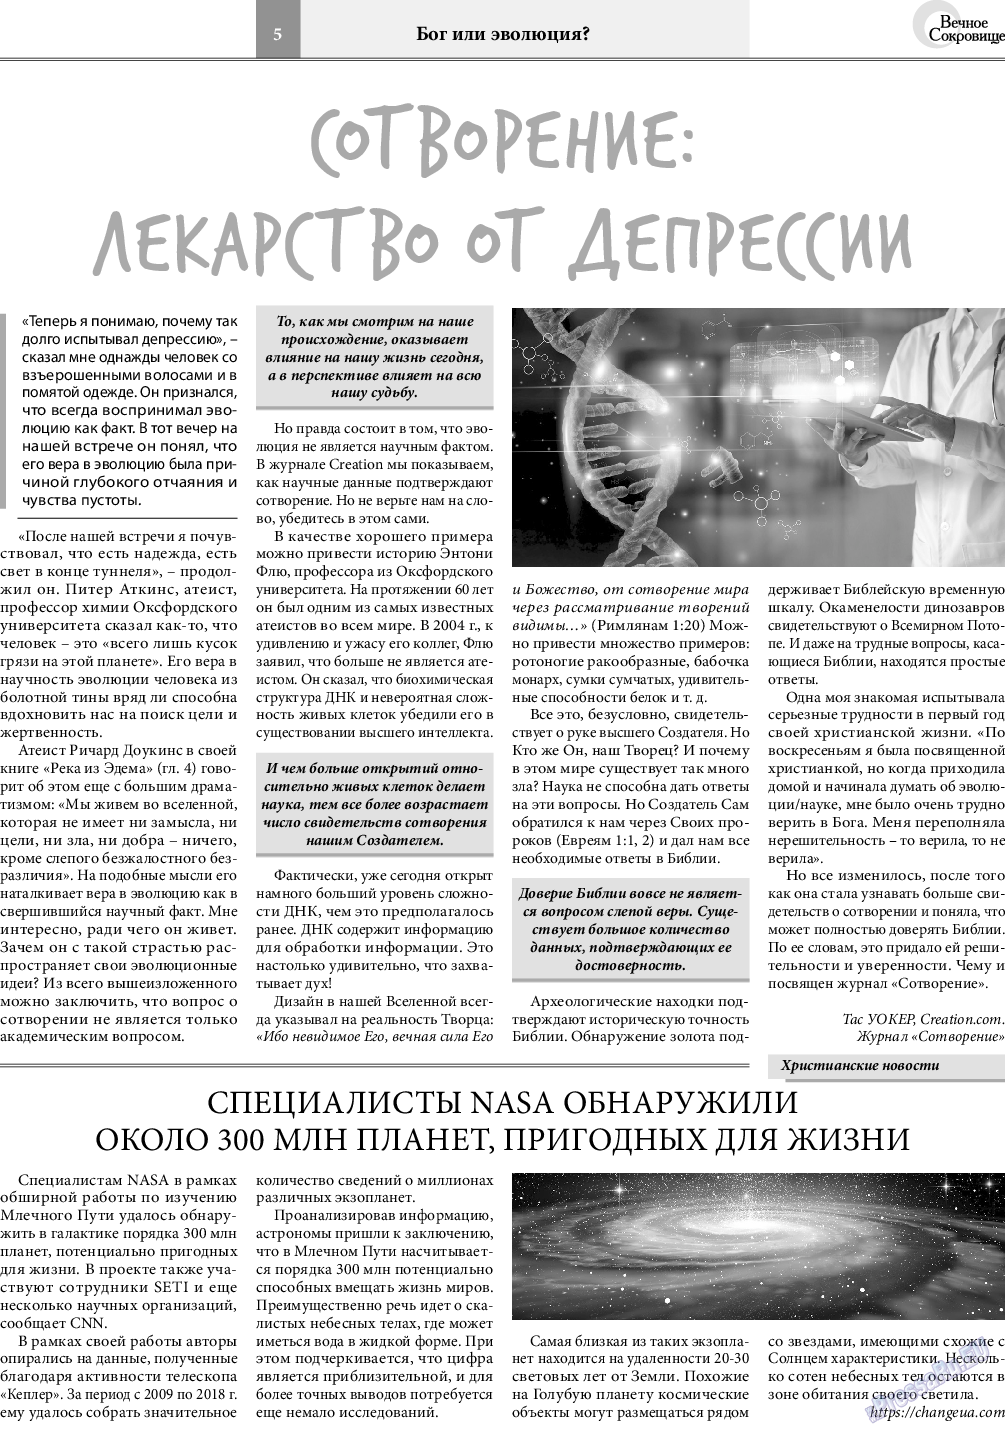 Вечное сокровище, газета. 2021 №1 стр.5